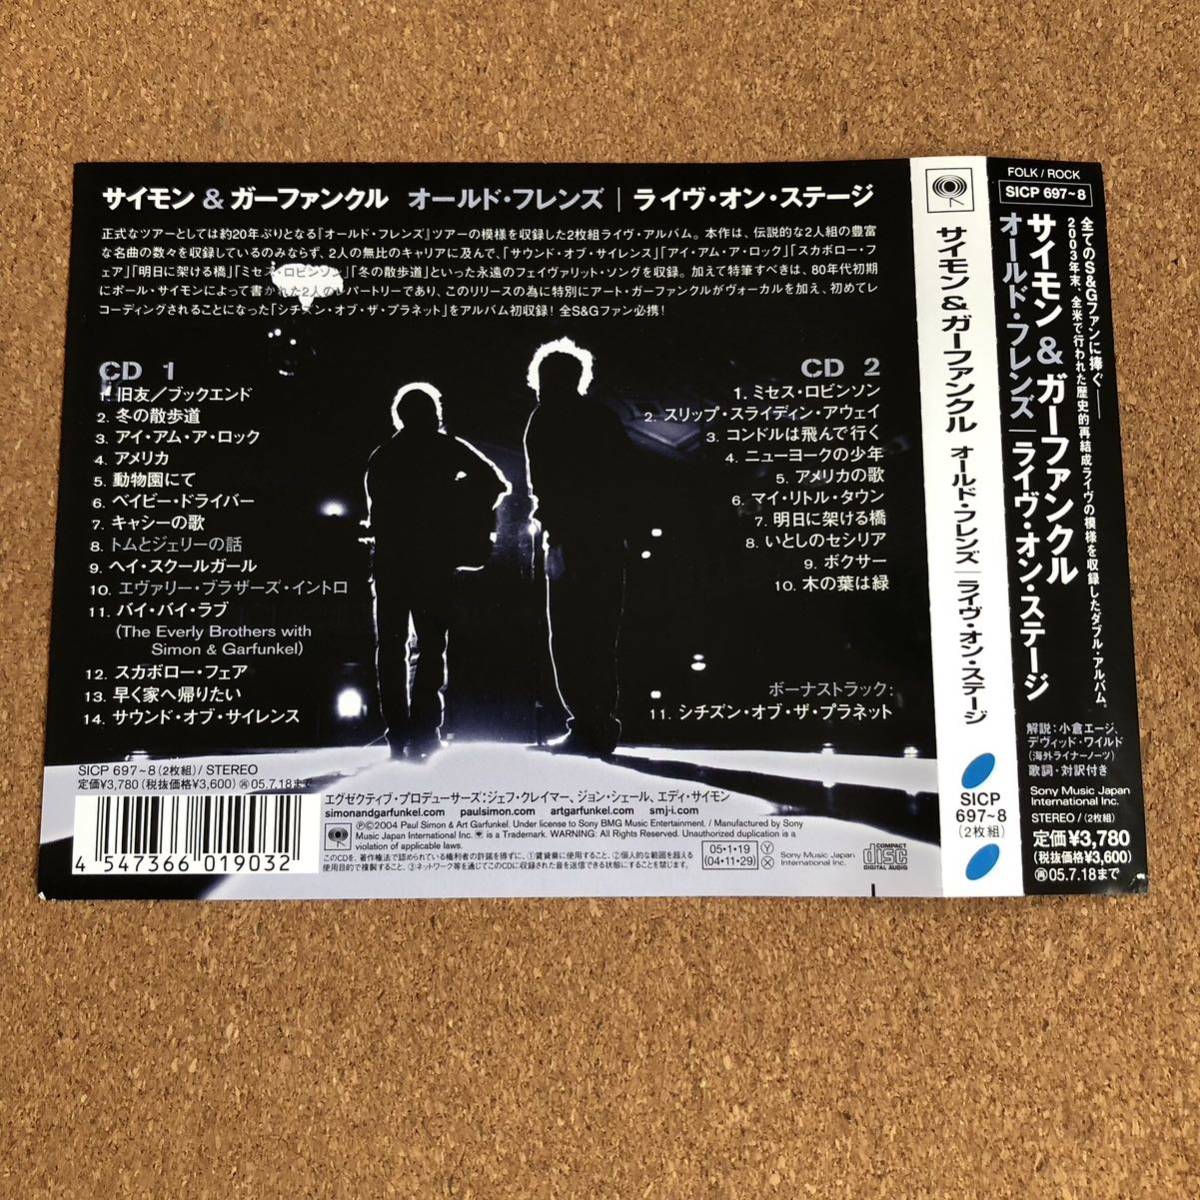 [国内盤CD] サイモン&ガーファンクル/オールドフレンズ〜ライヴオンステージ [2枚組] 中古CDの画像3